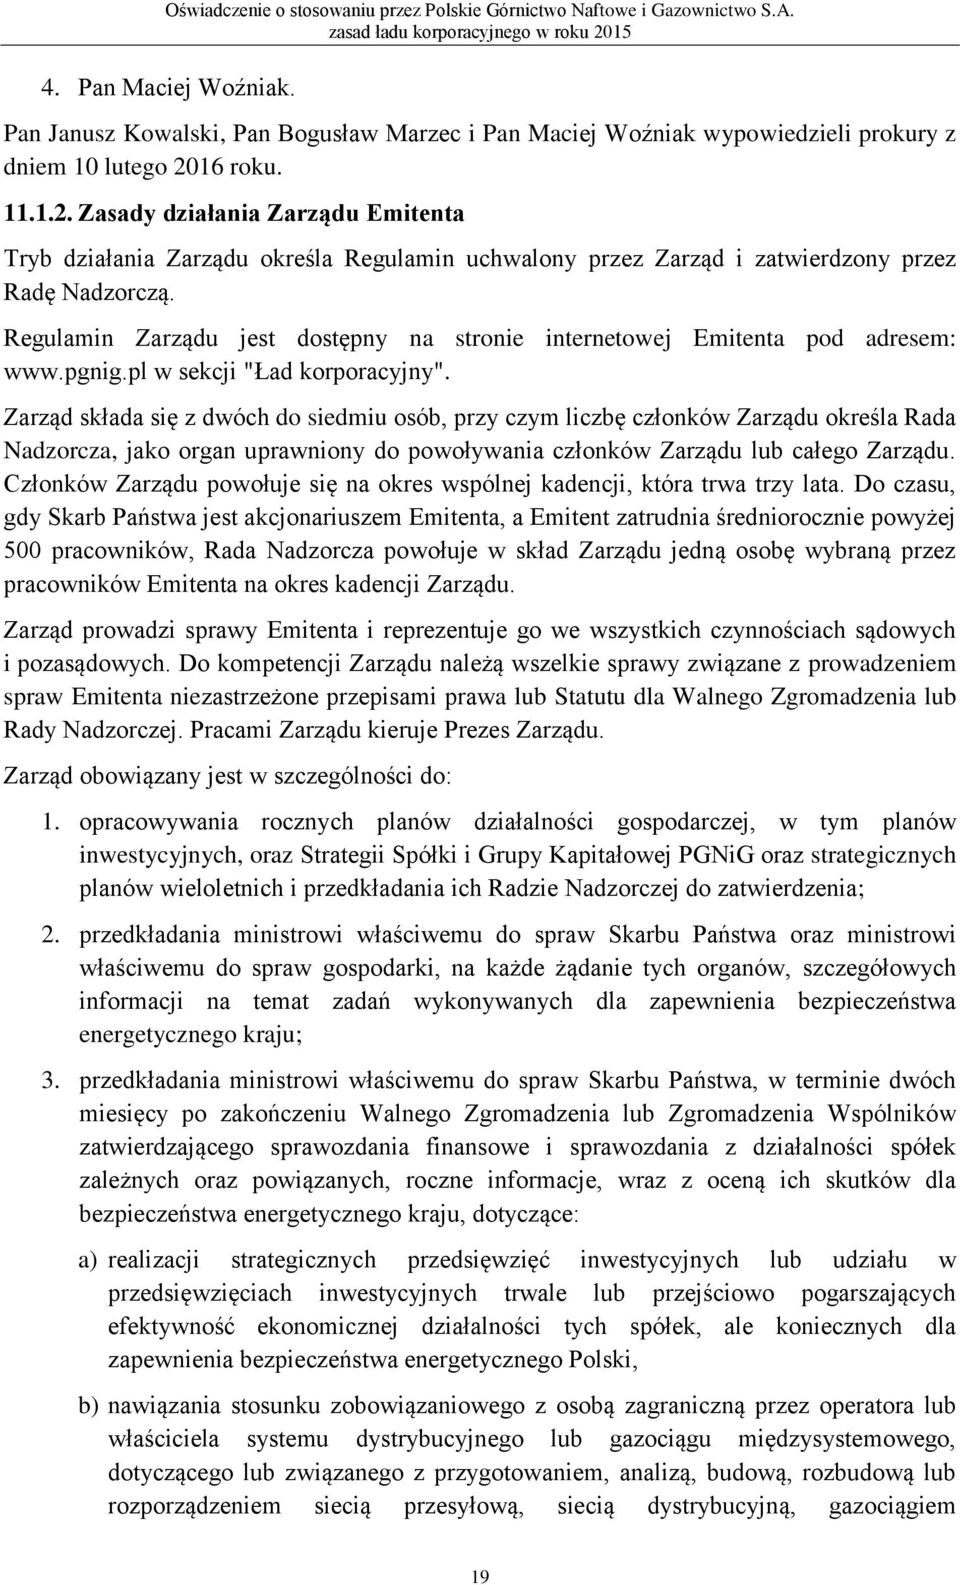 Regulamin Zarządu jest dostępny na stronie internetowej Emitenta pod adresem: www.pgnig.pl w sekcji "Ład korporacyjny".